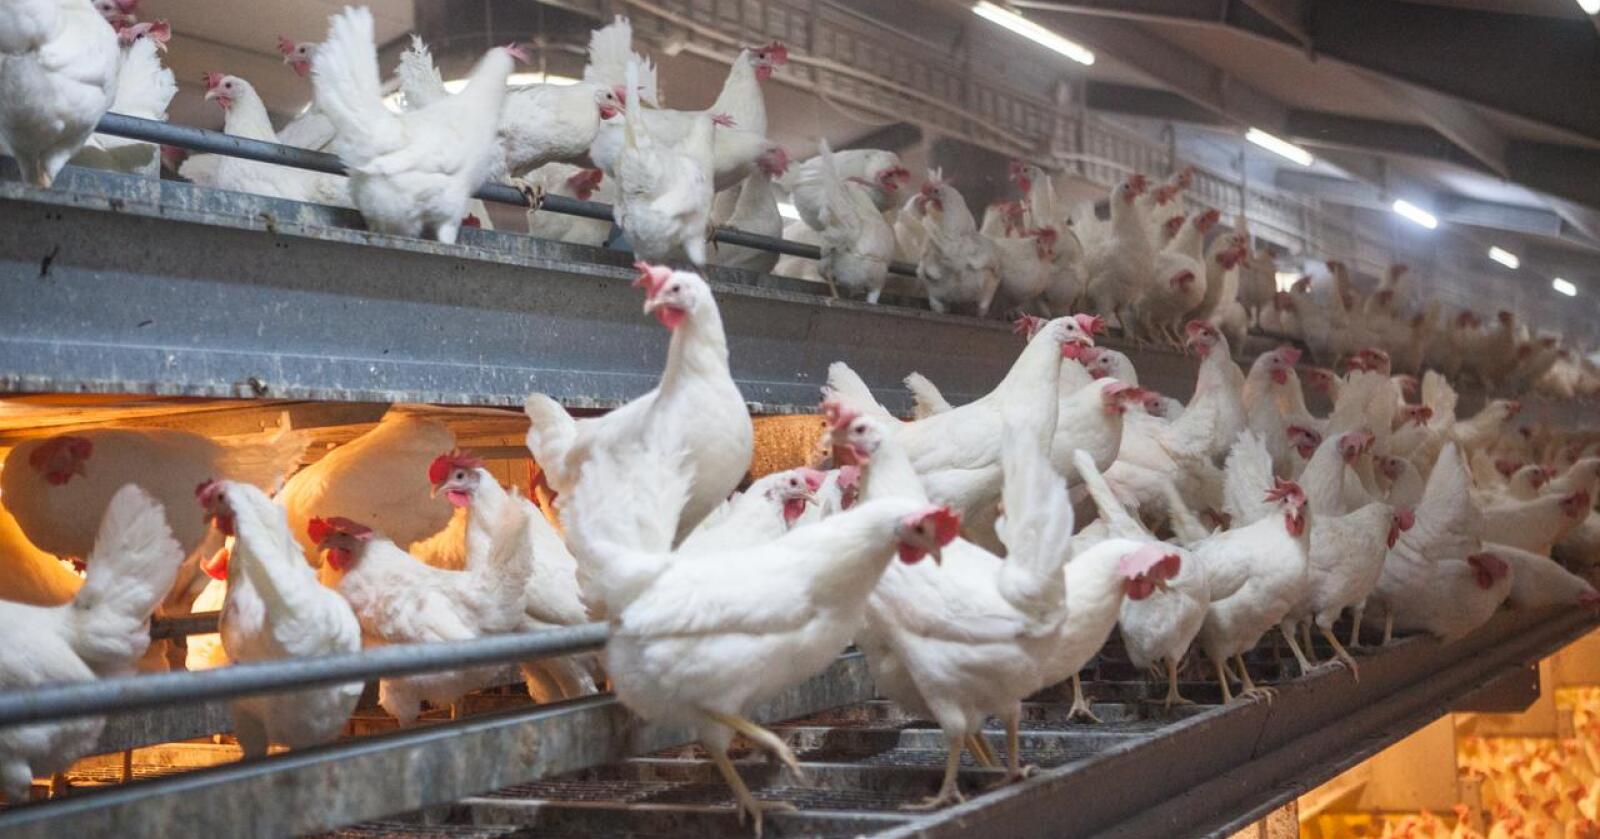 Brudd: Brystbeinbrudd hos høner har vist seg å være et globalt problem. I den danske undersøkelsen ble alle hønene obdusert etter endt eggproduksjon for å avdekke eventuelle brudd. (Illustrasjonsfoto: Karianne Fuglerud Ingerø, NFL)